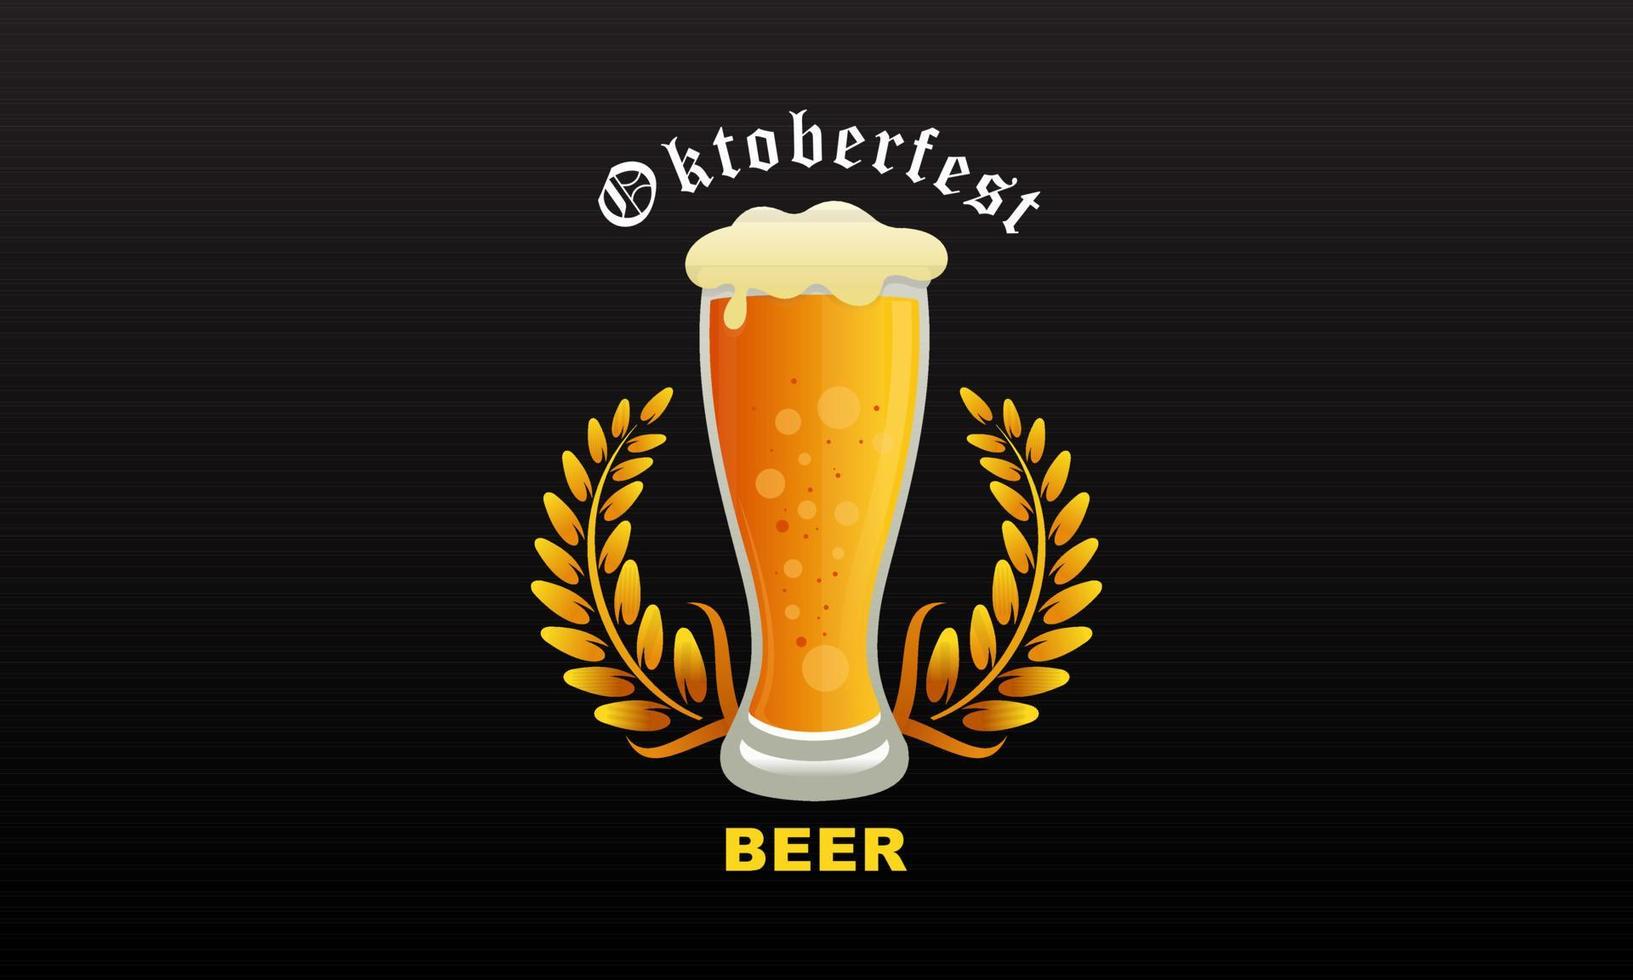 fond de festival de bière oktoberfest réaliste peut être utilisé pour le modèle daffiche vecteur